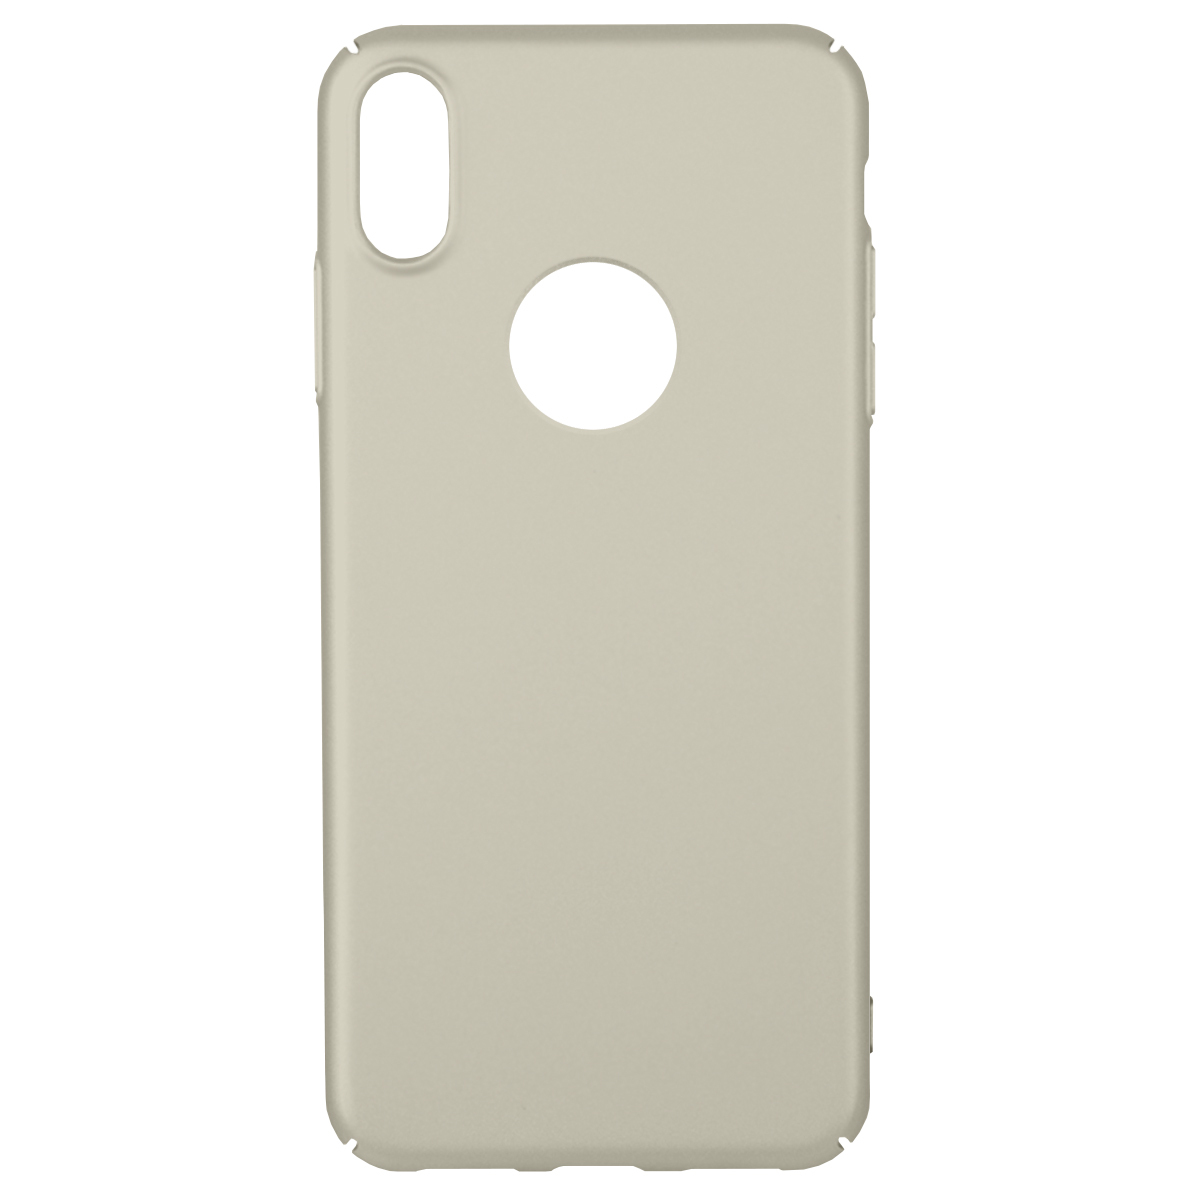 Ультратонкий пластиковый чехол Bruno Soft Touch для iPhone XS Max (Светло-серый)